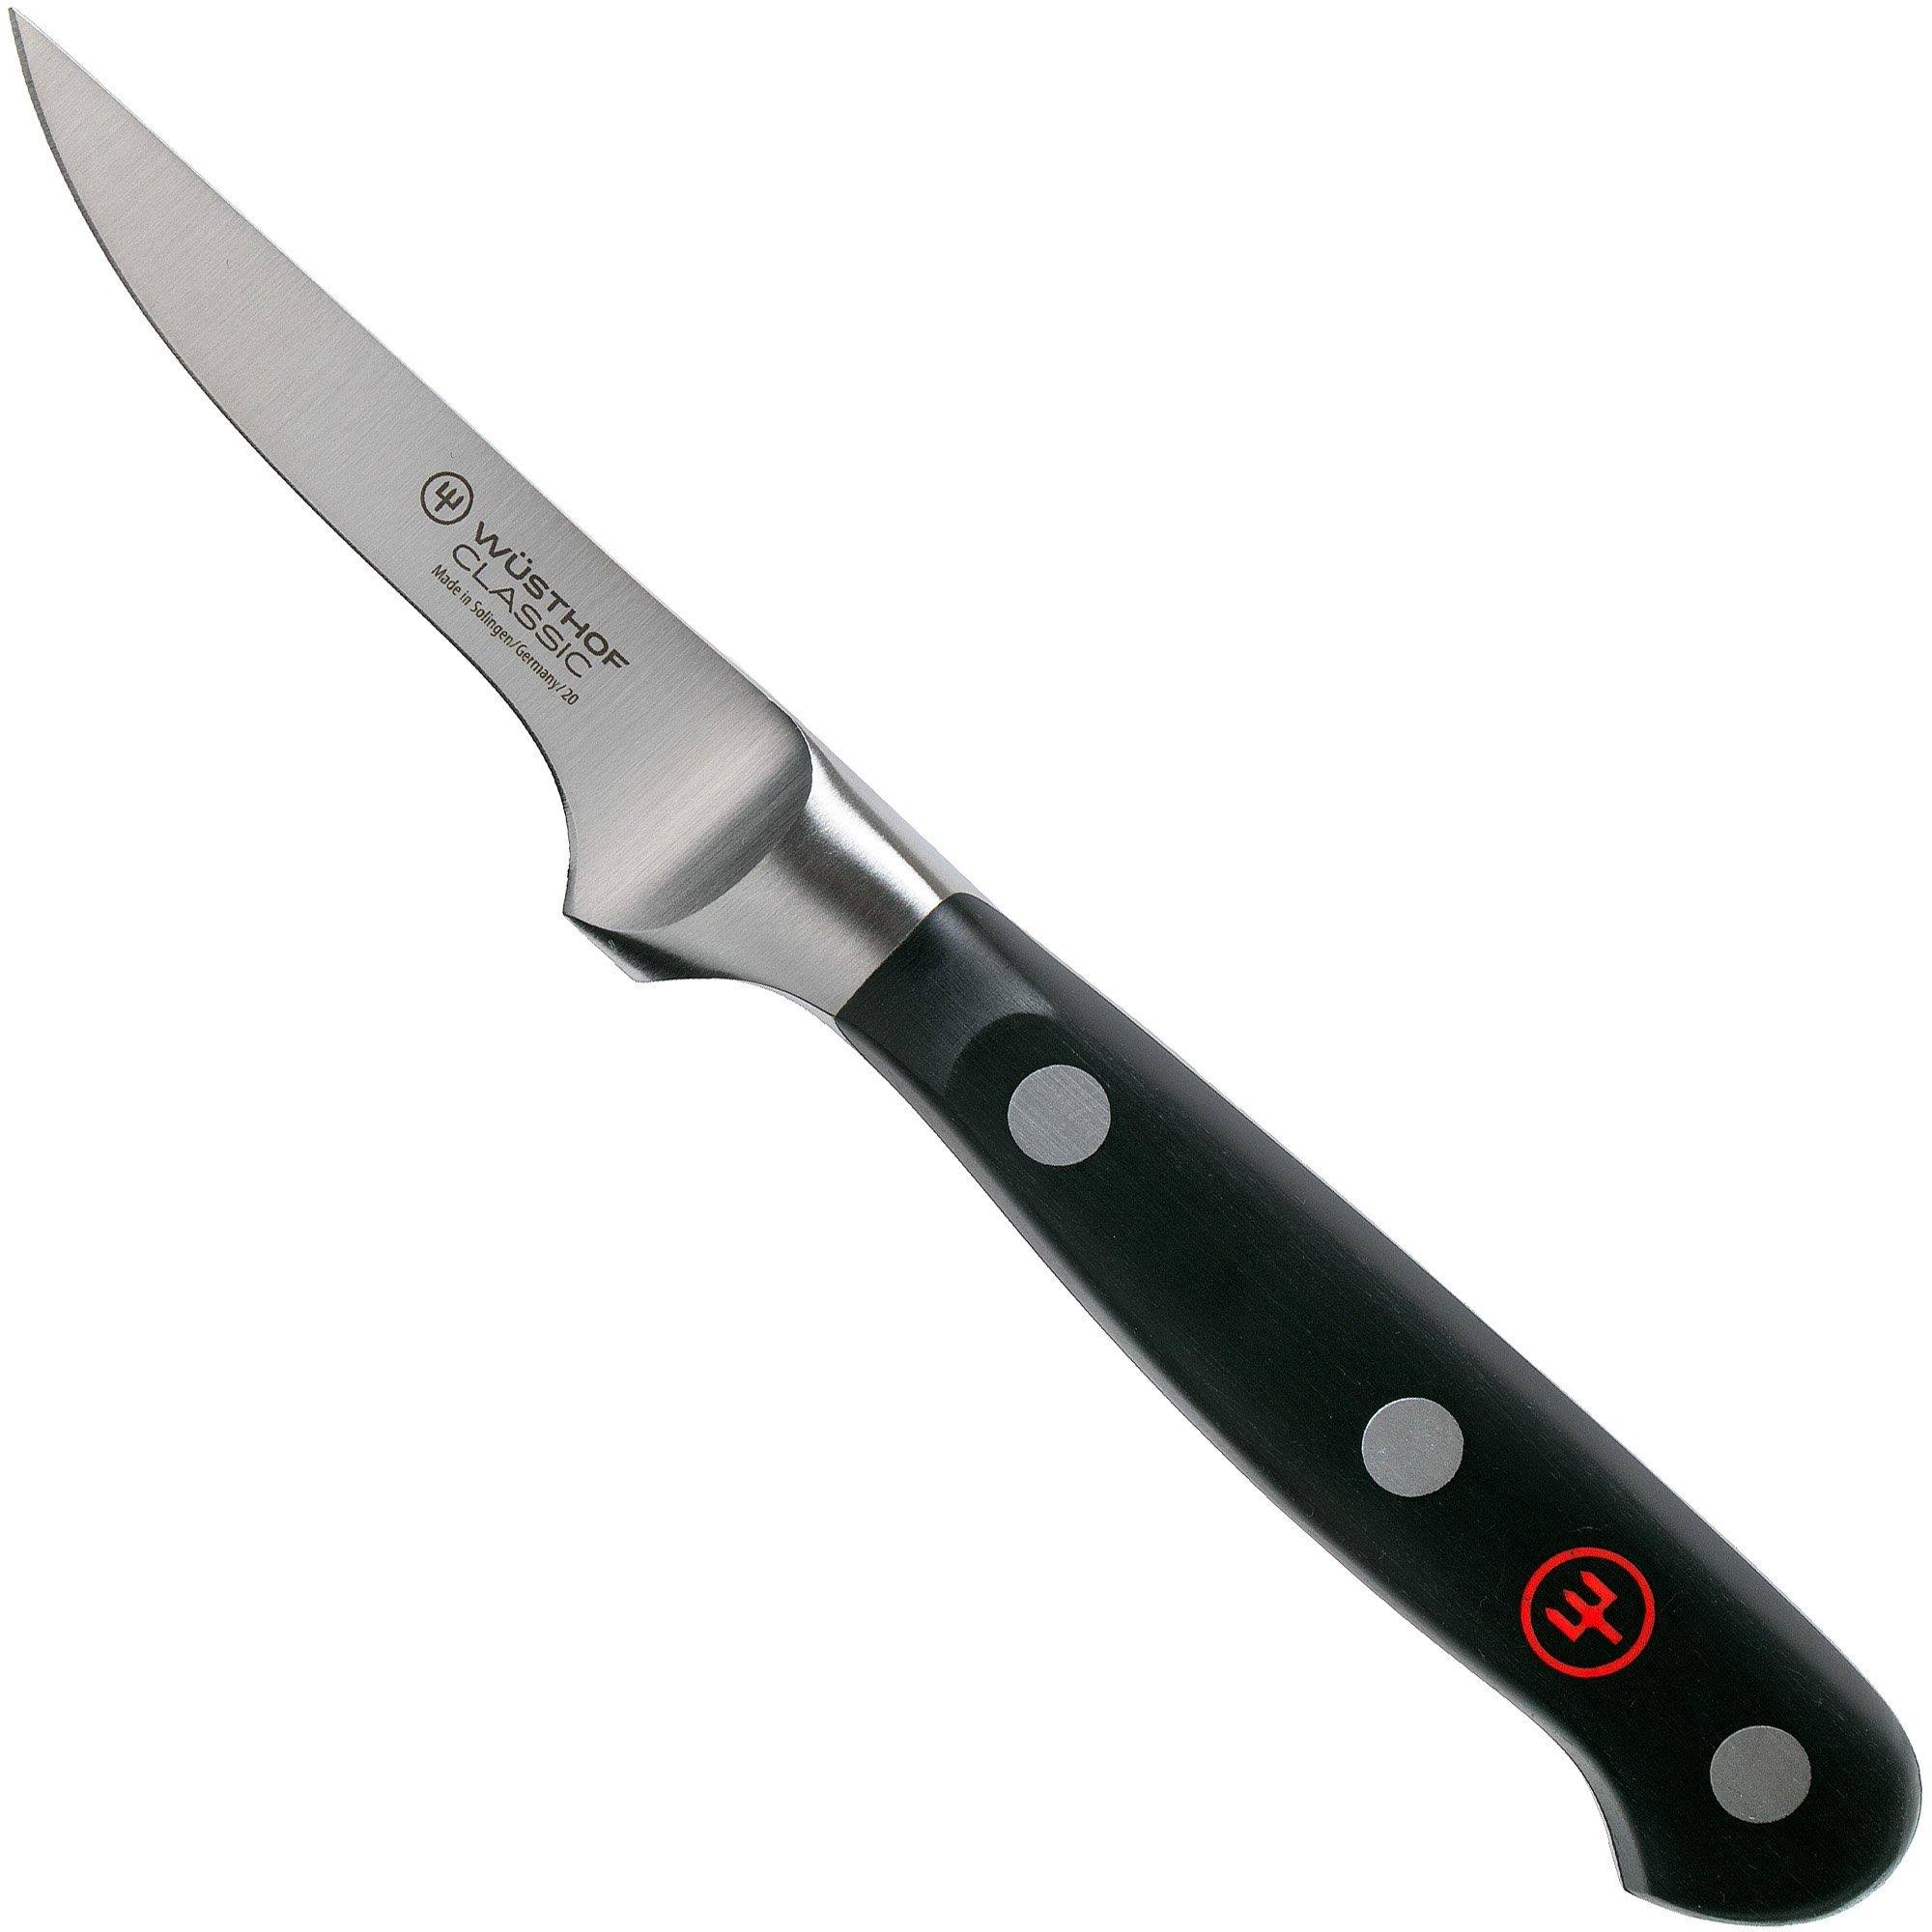 Wüsthof Classic vegetable knife 7 cm, 1040105007